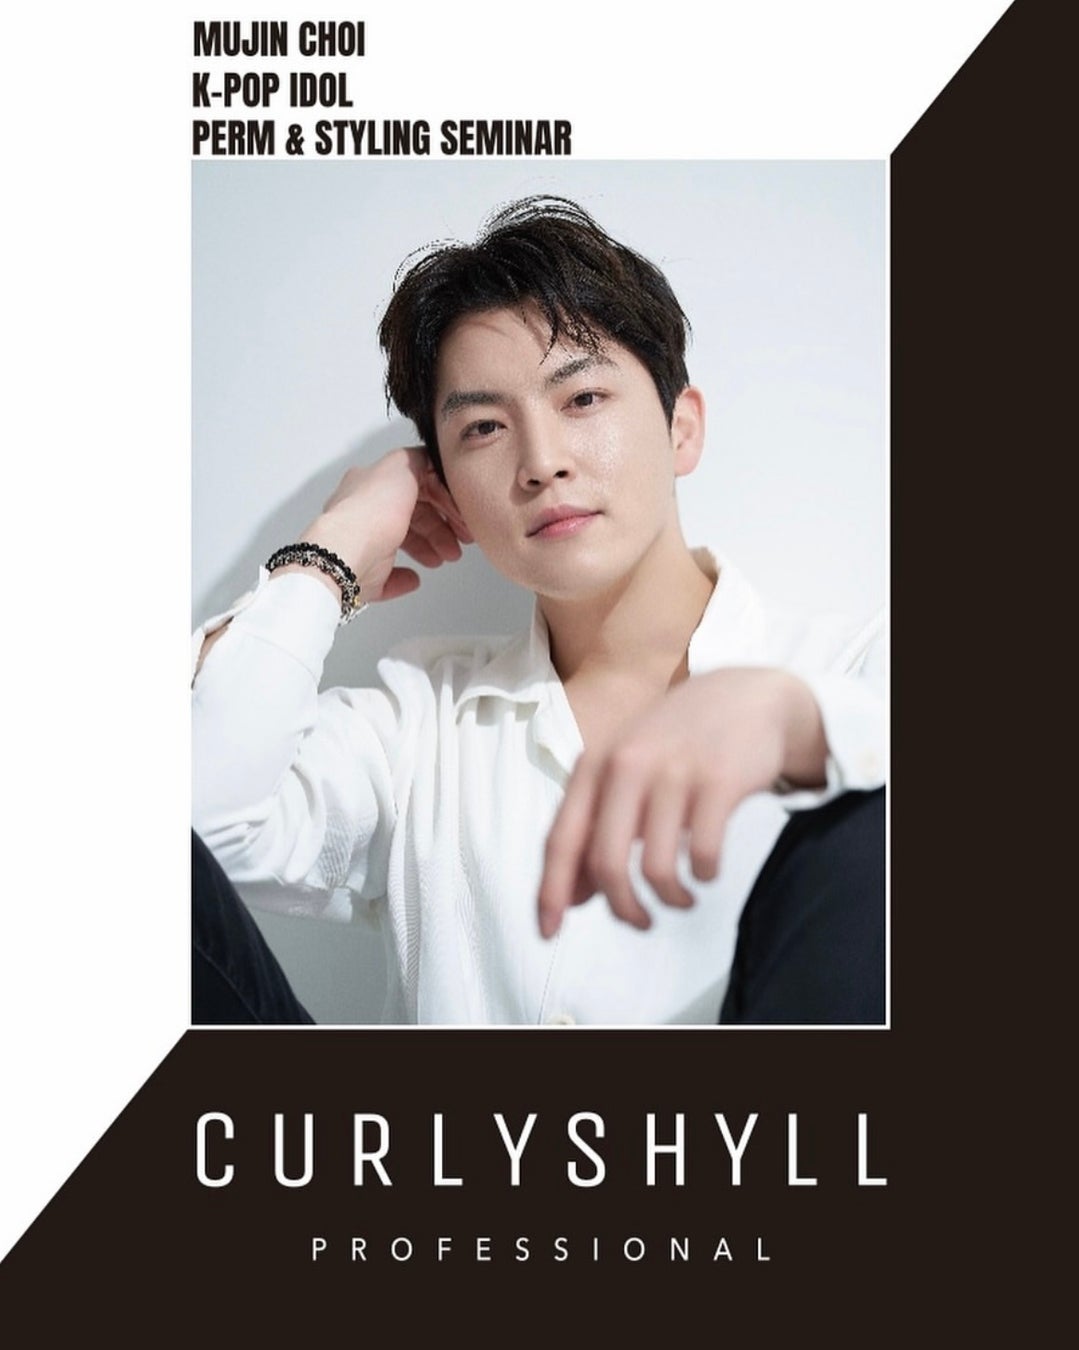 韓国ヘアケアブランド「CURLY SHYLL」、サロン・スタイリスト向けセミナー実施